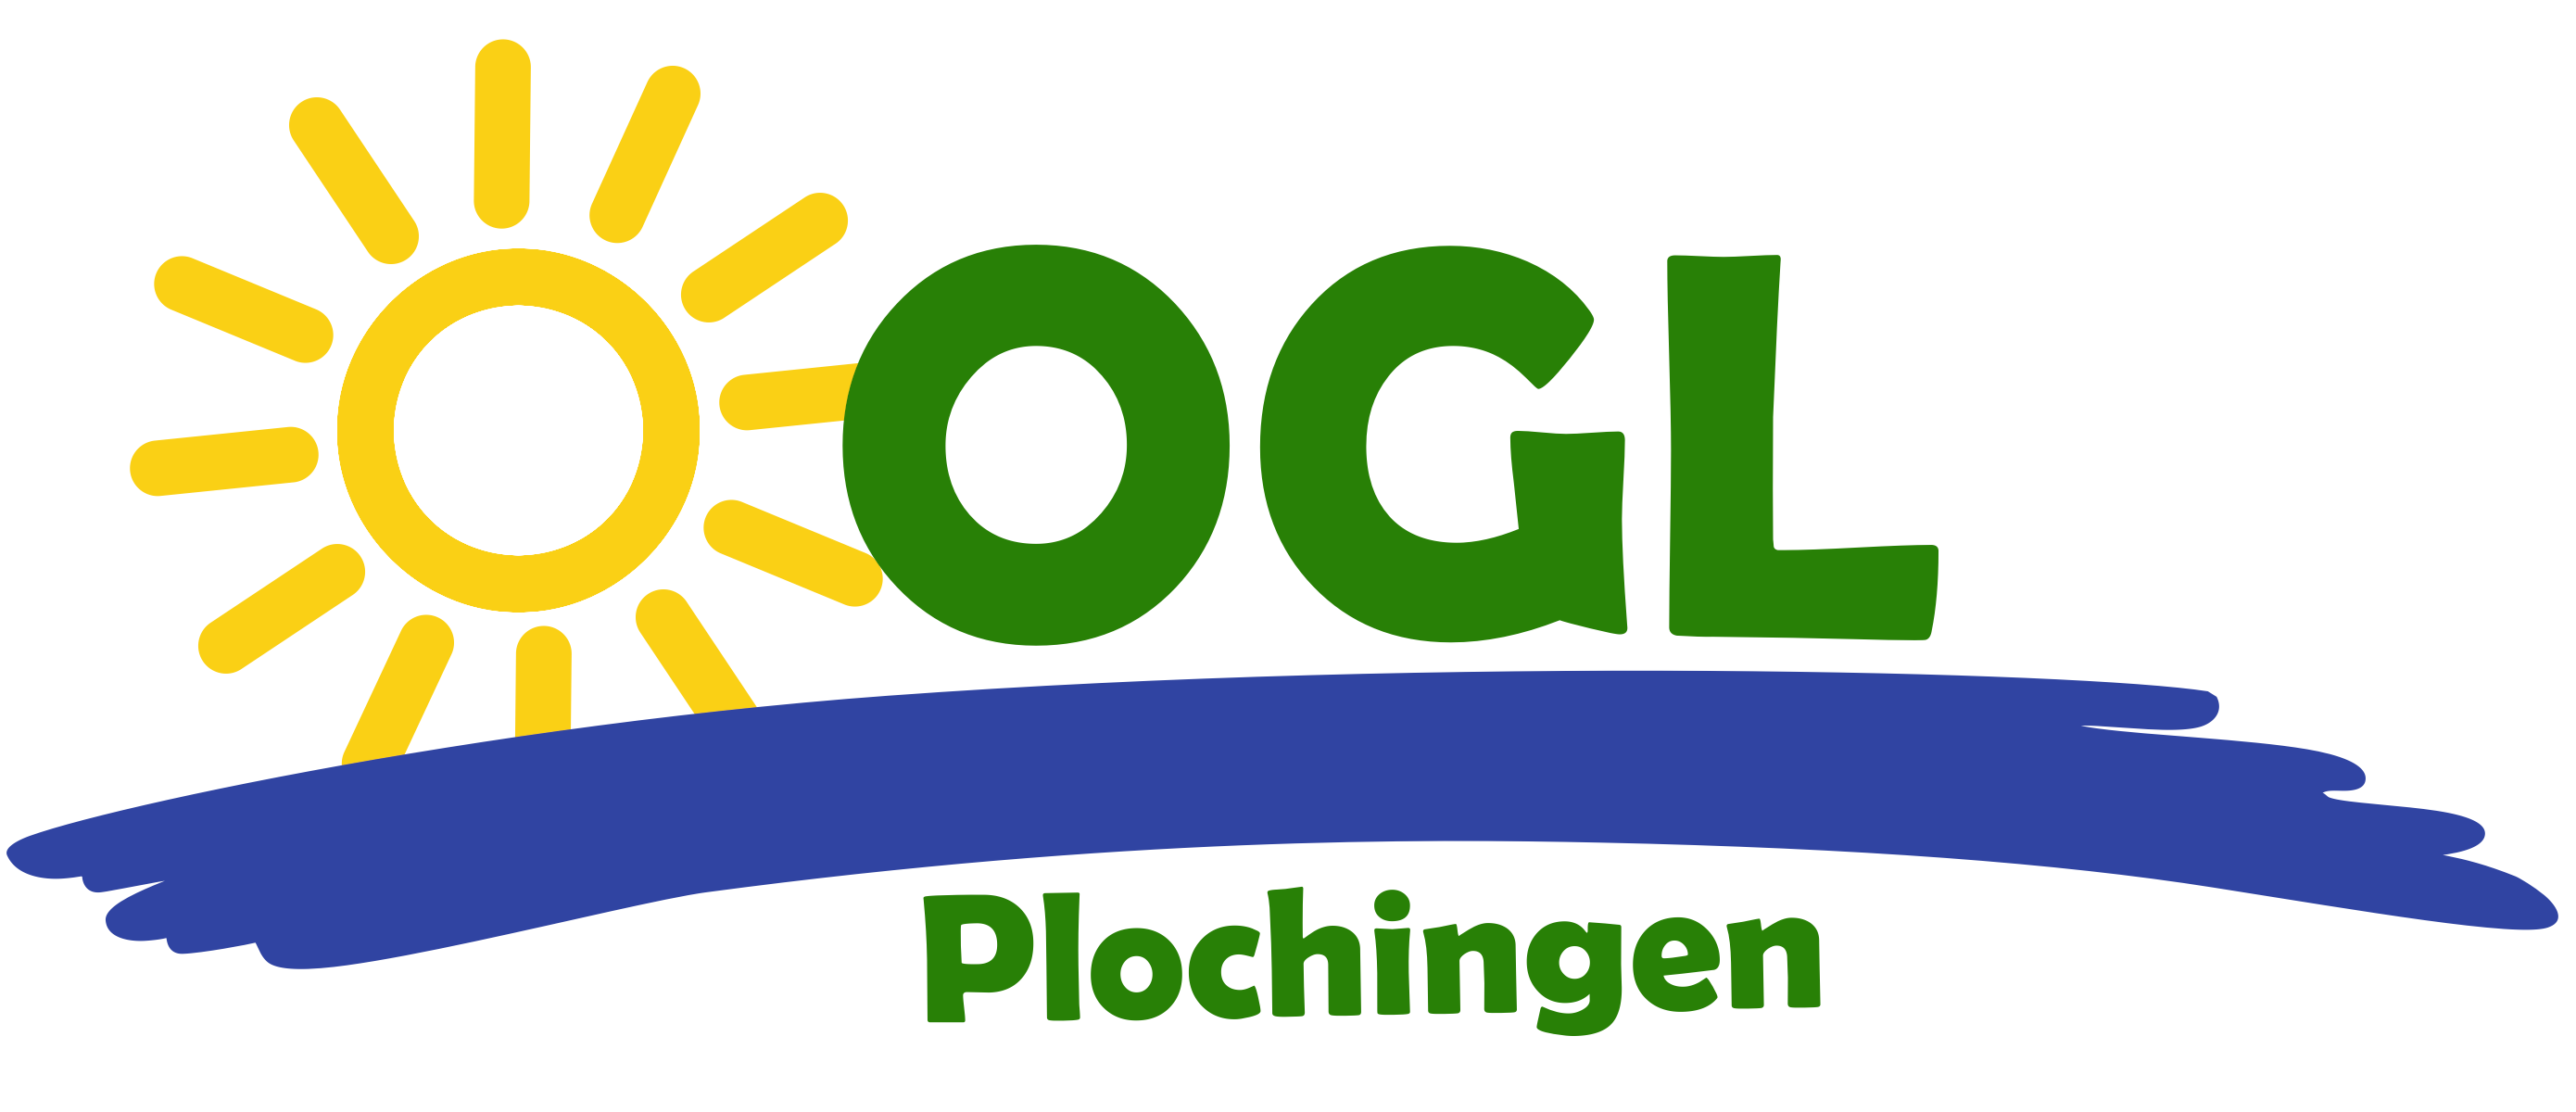 Gelbe Sonne - Buchstaben O G L in Grün - darunter ein blauer Schwung, der den Neckar symbolisiert